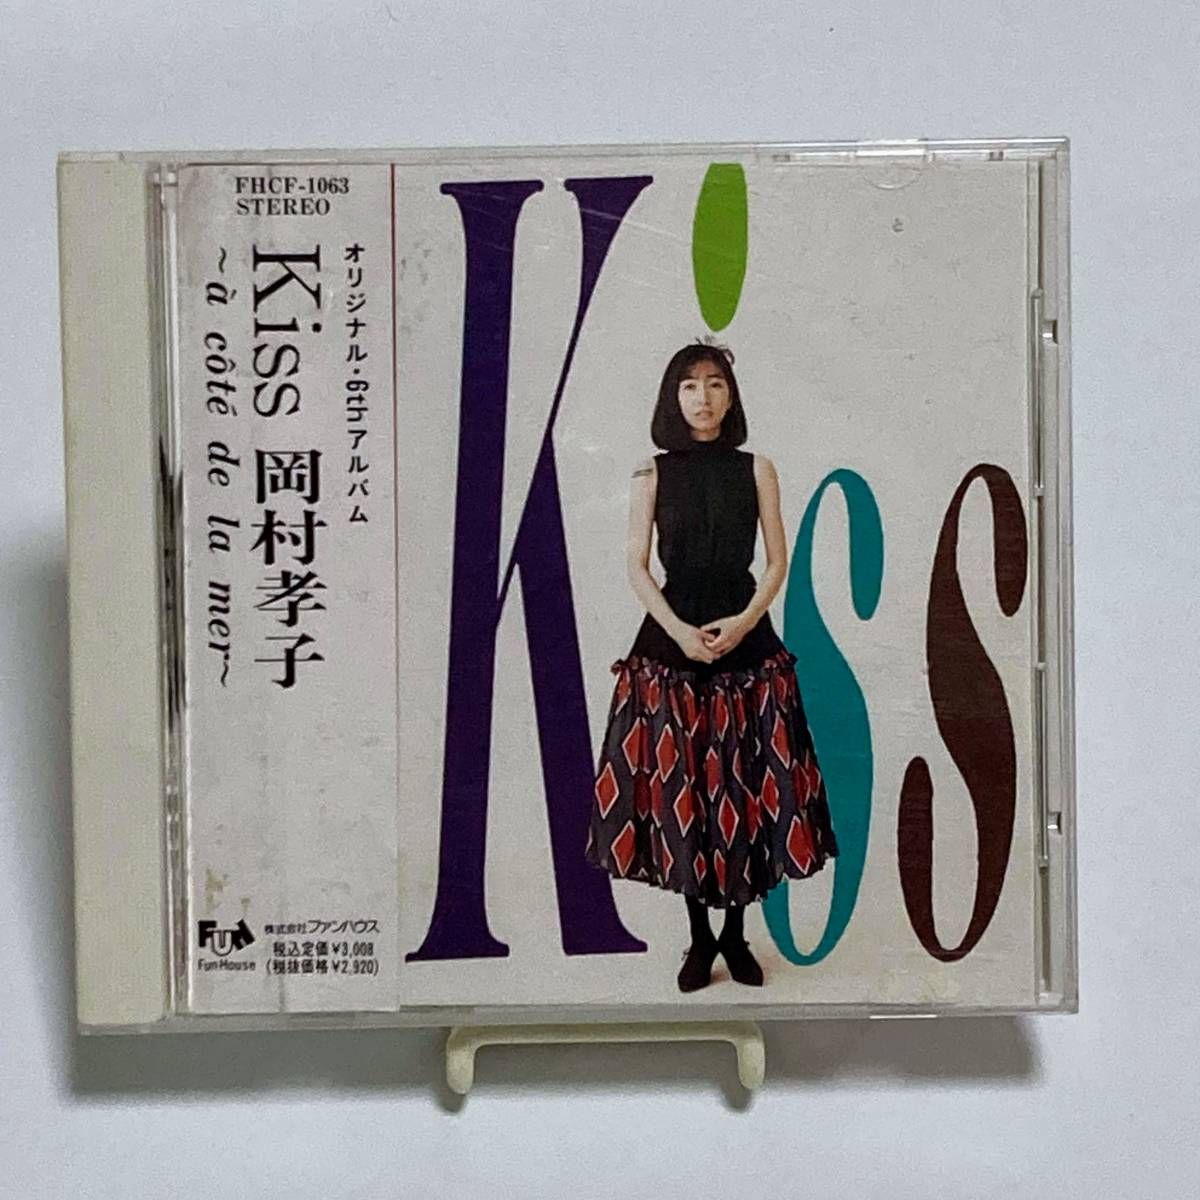 岡村孝子 / Kiss CD_画像1